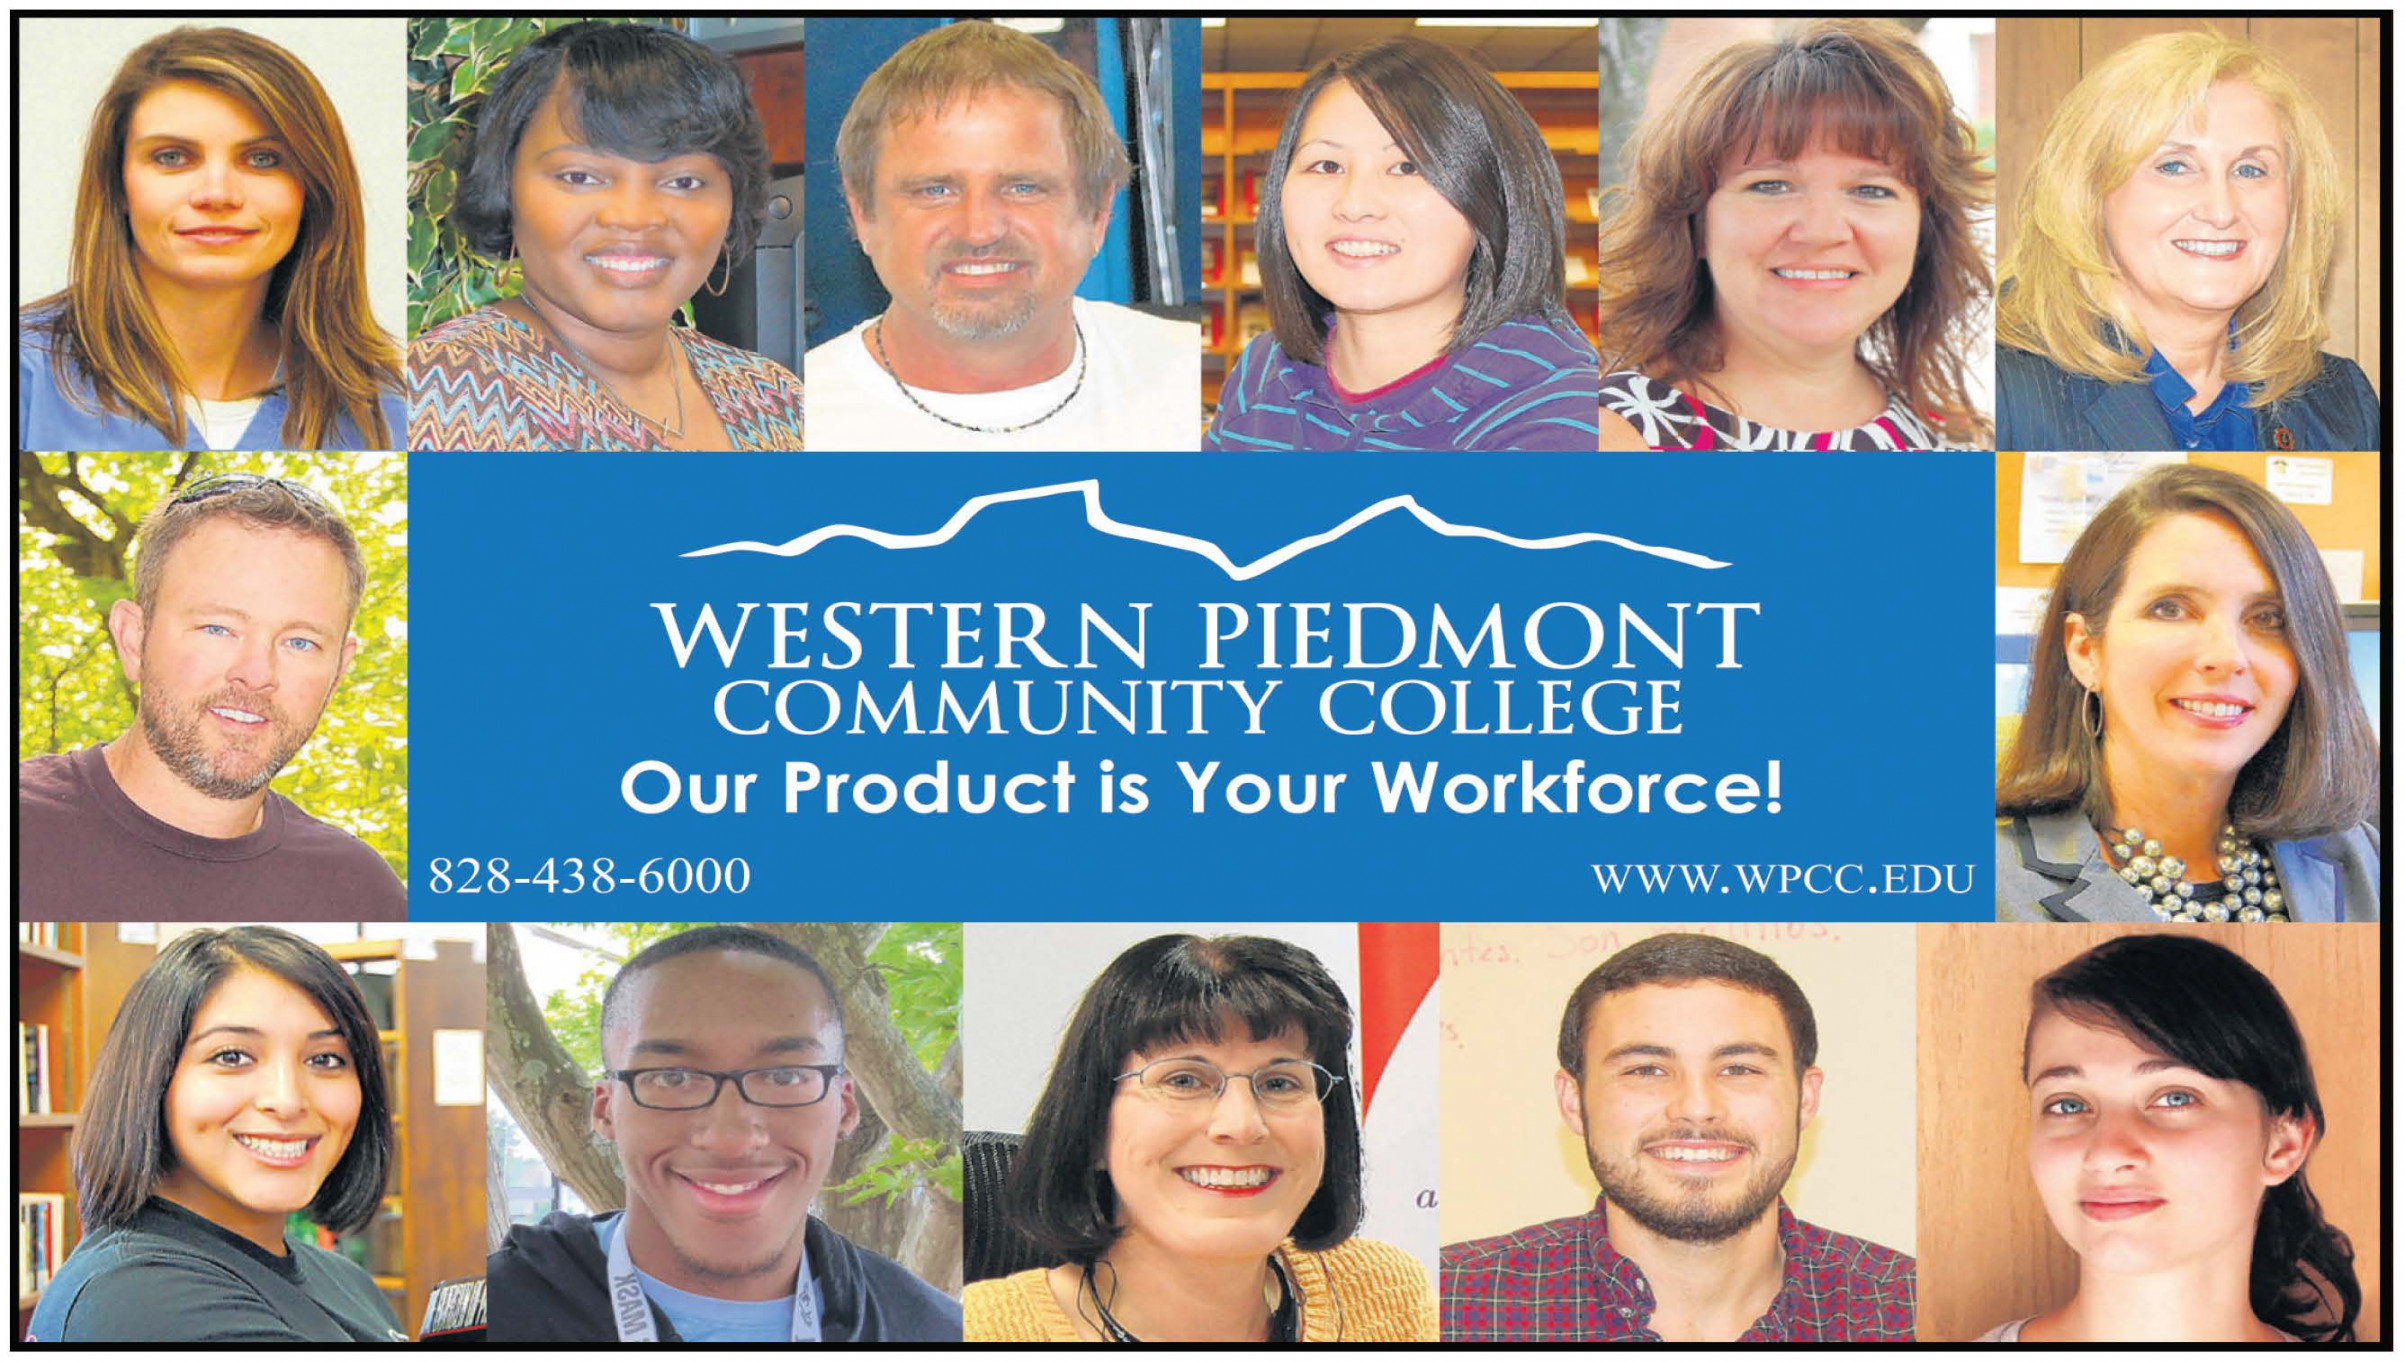 Western Piedmont Community College Jobs - Join The Team At Western Piedmont Community College - Exciting Job Opportunities!